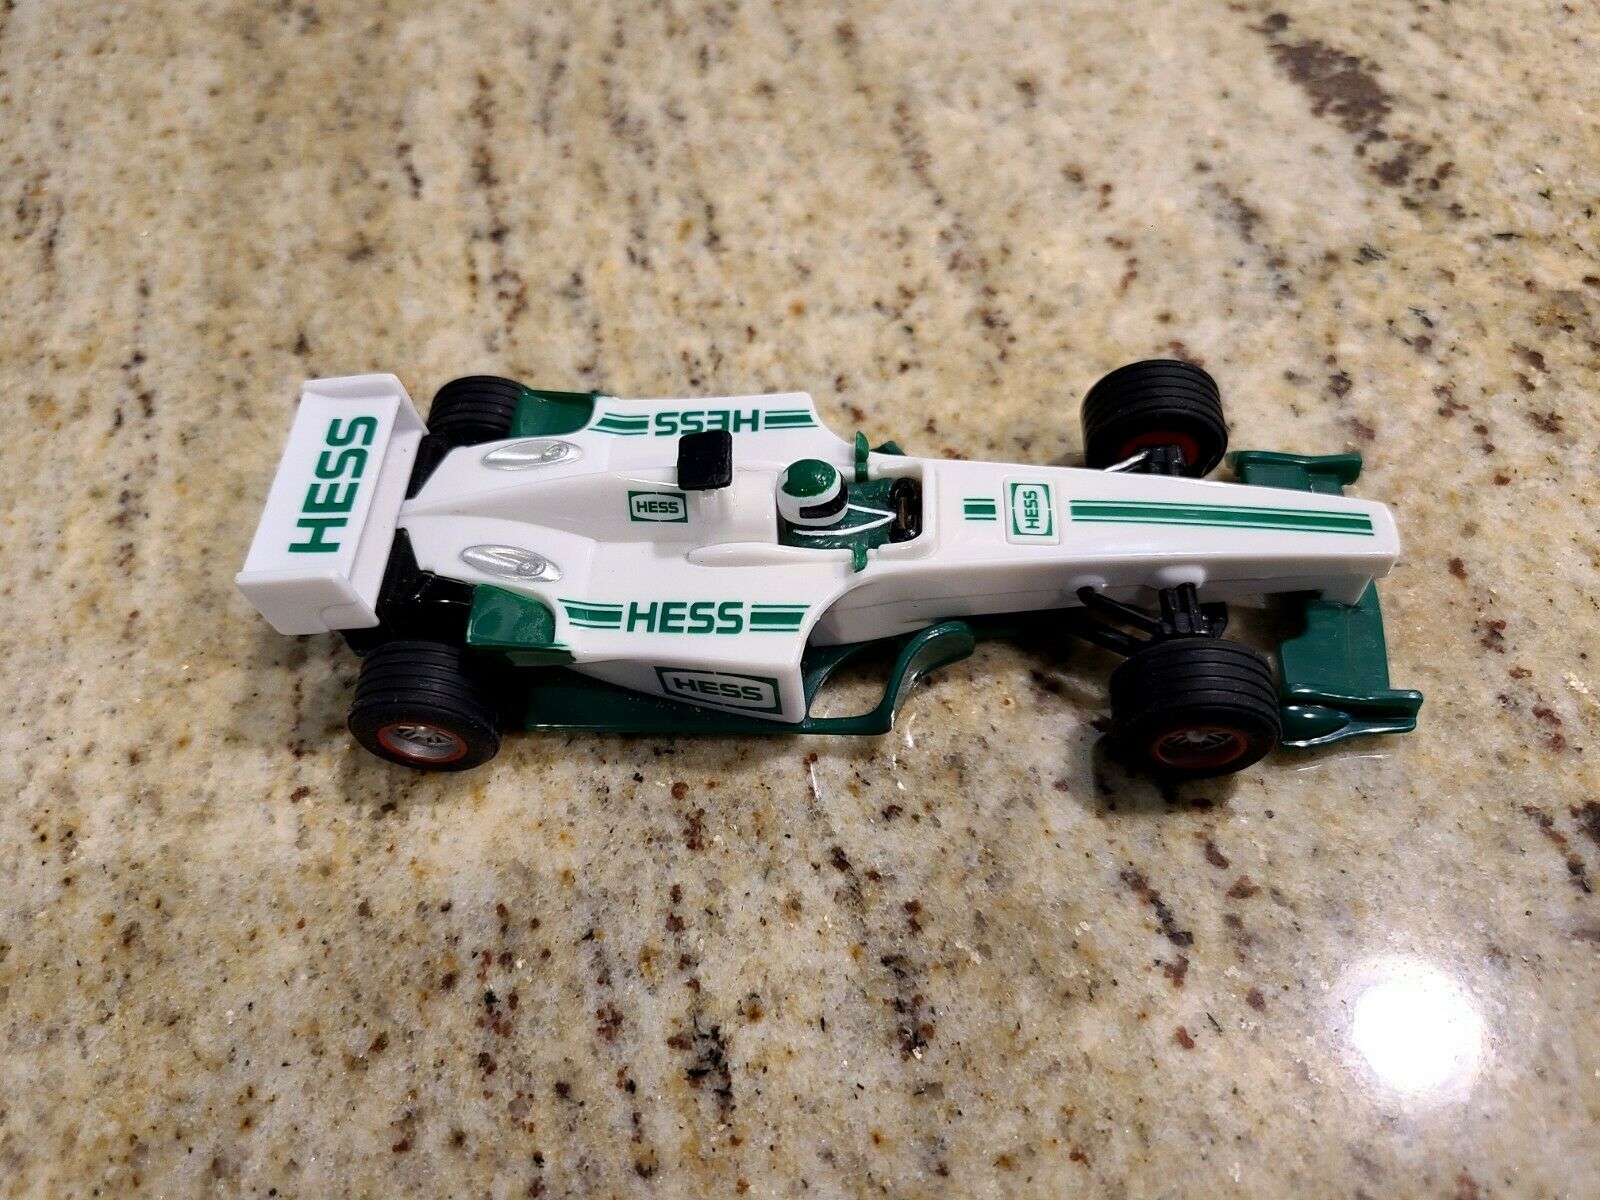 2003 Hess Toy Race Car Pull Backs White & Green